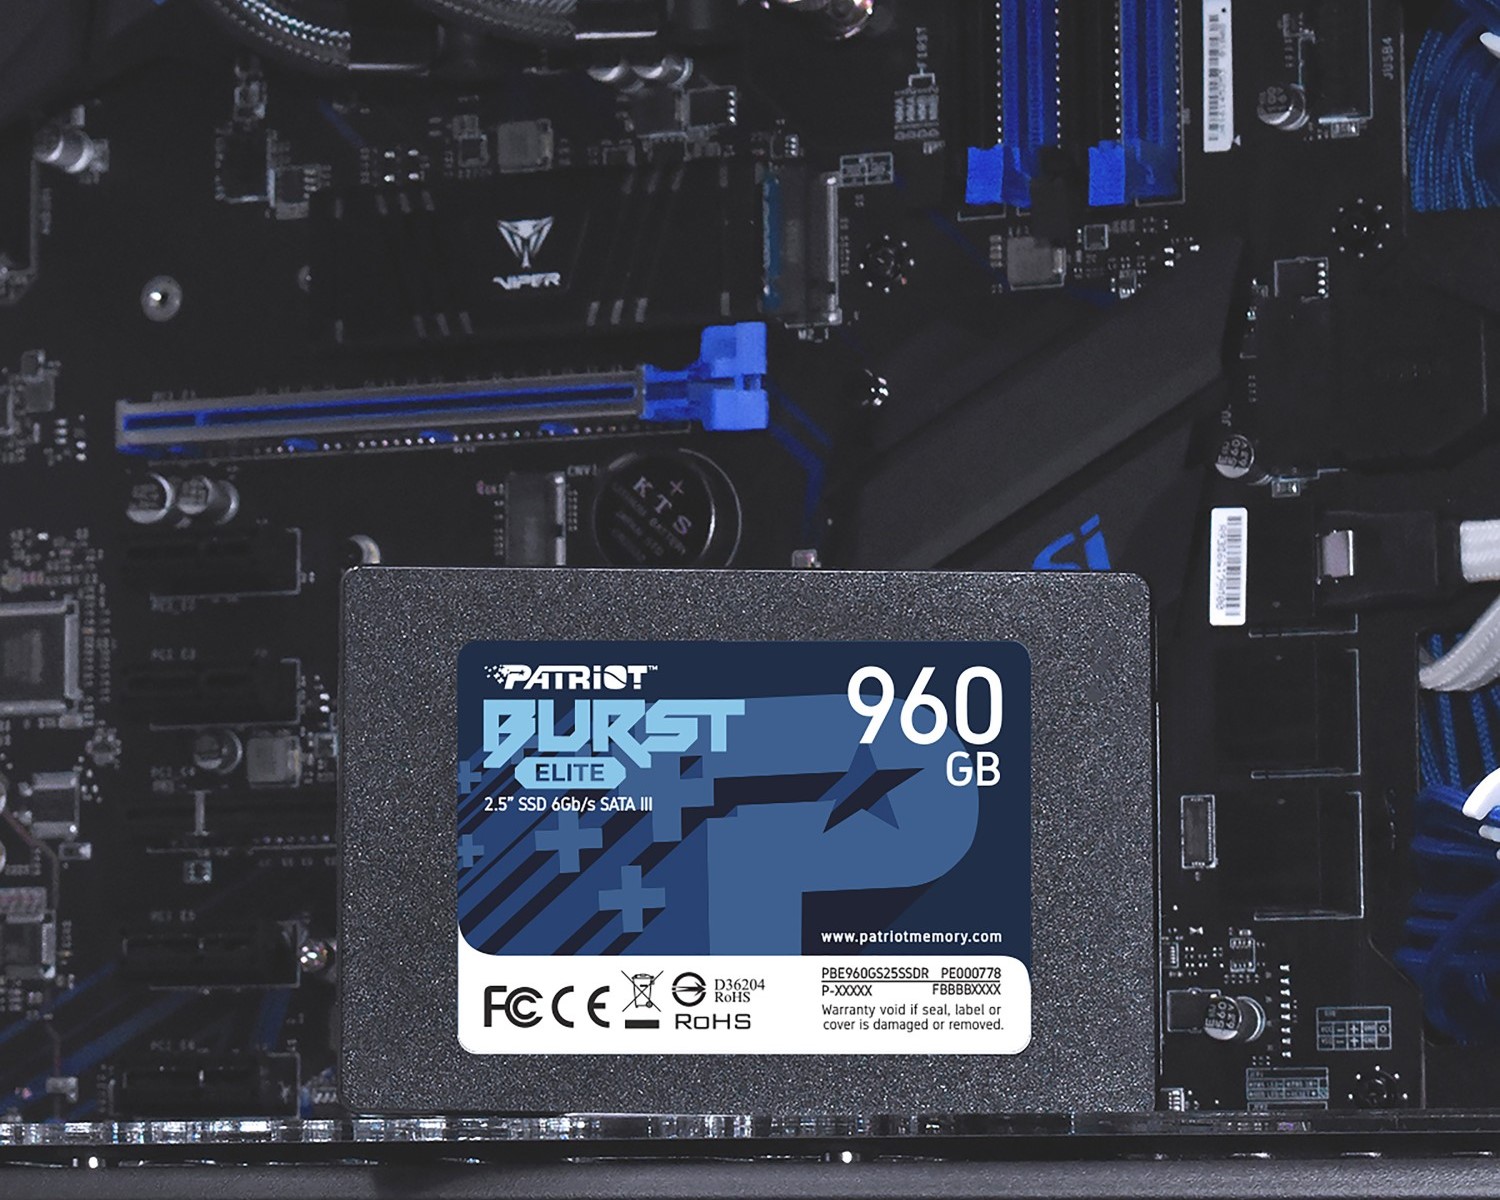 Intern SSD disk Patriot Burst Elite o kapacit 960 GB nabz vysok penosov rychlosti, aby zabrnil zpomalovn vkonu ze strany loit.